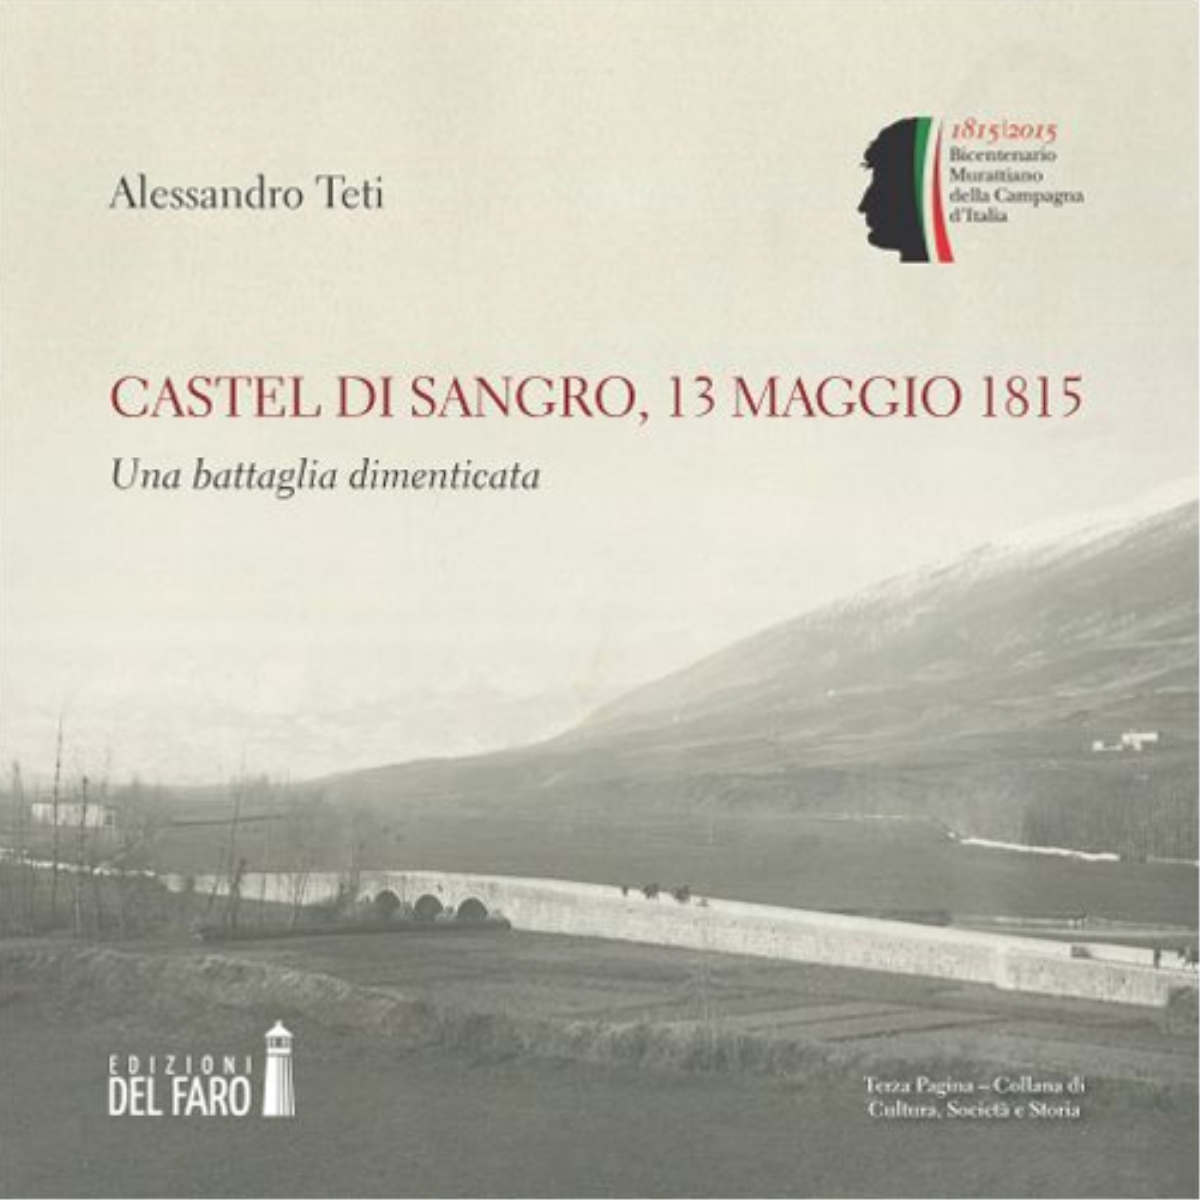 Castel di Sangro, 13 maggio 1815 di Teti Alessandro - Edizioni Del faro, 2015 libro usato